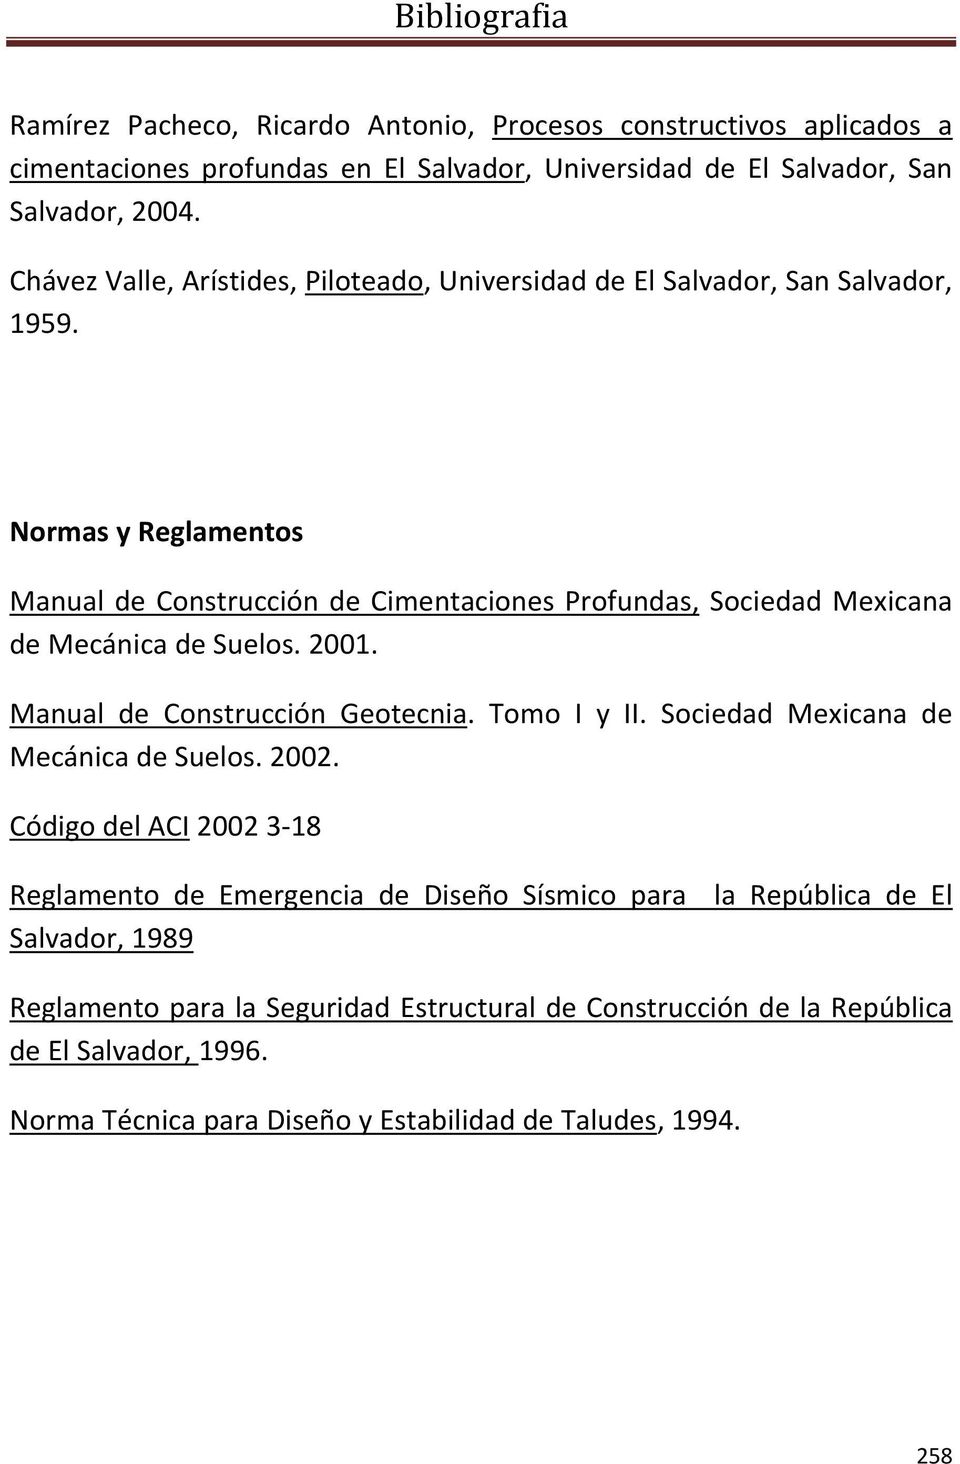 Normas y Reglamentos Manual de Construcción de Cimentaciones Profundas, Sociedad Mexicana de Mecánica de Suelos. 2001. Manual de Construcción Geotecnia. Tomo I y II.